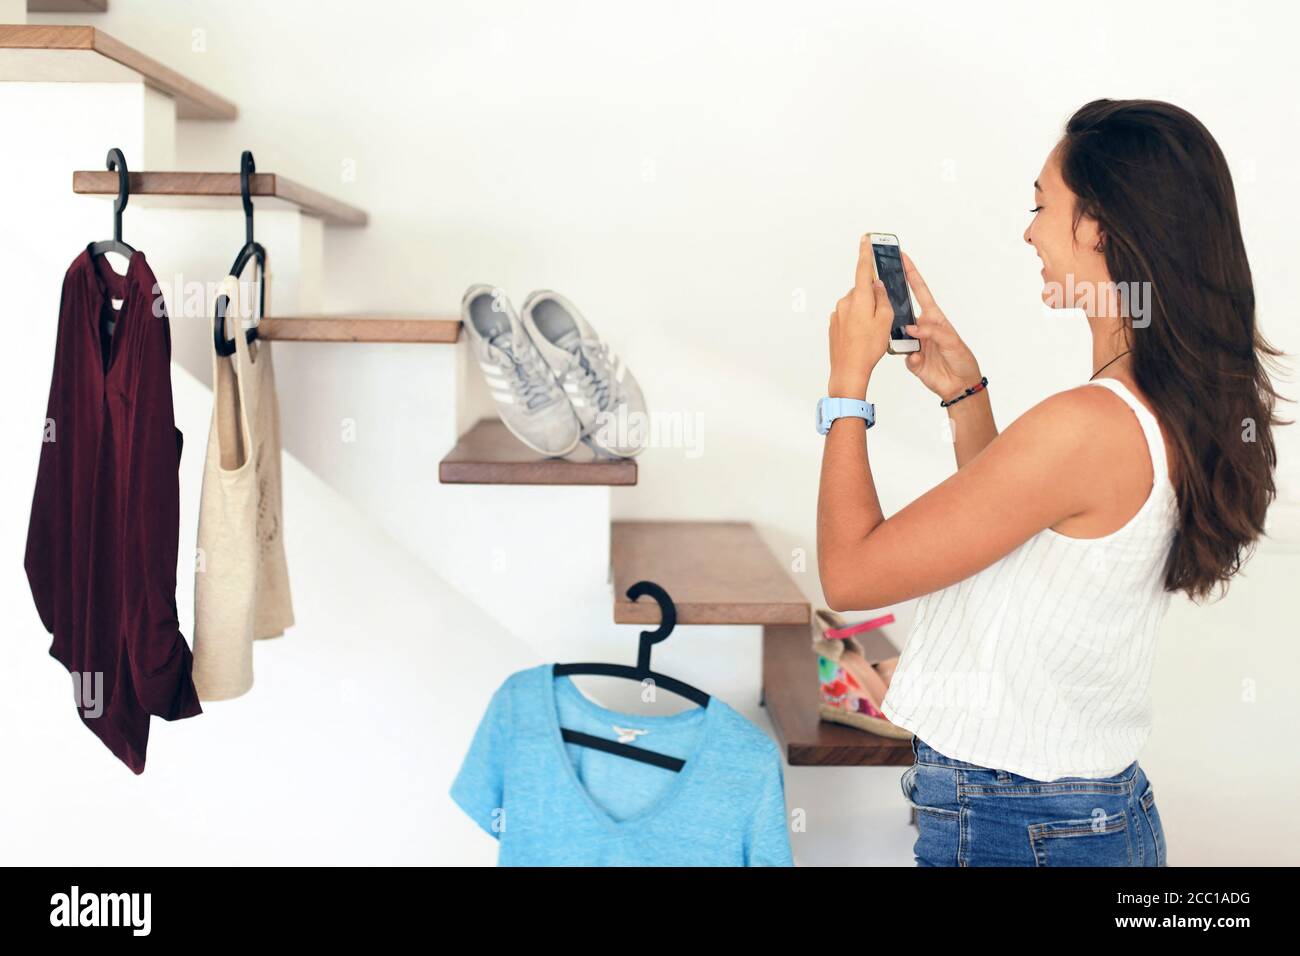 Joven adolescente en con un smartphone usando el Vinted app para su ropa Fotografía de stock Alamy